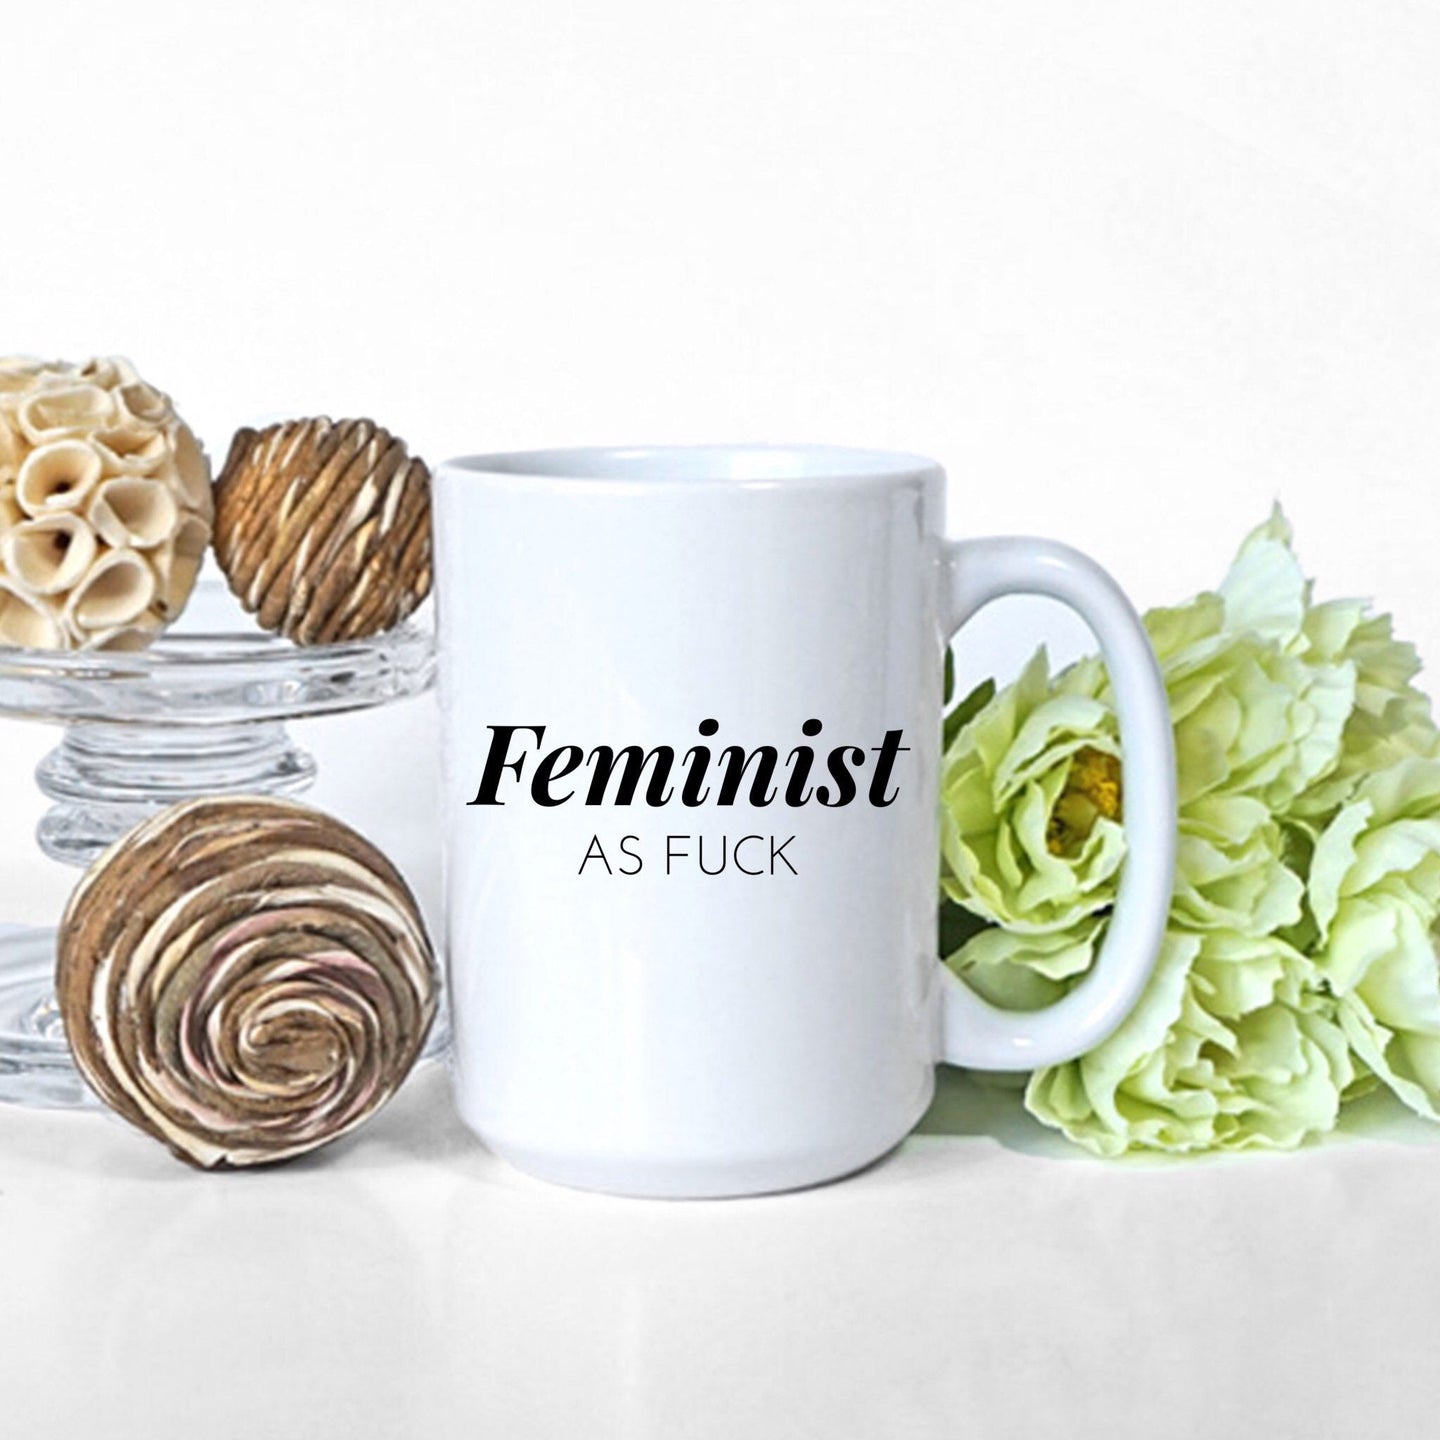 Feminist as Fuck